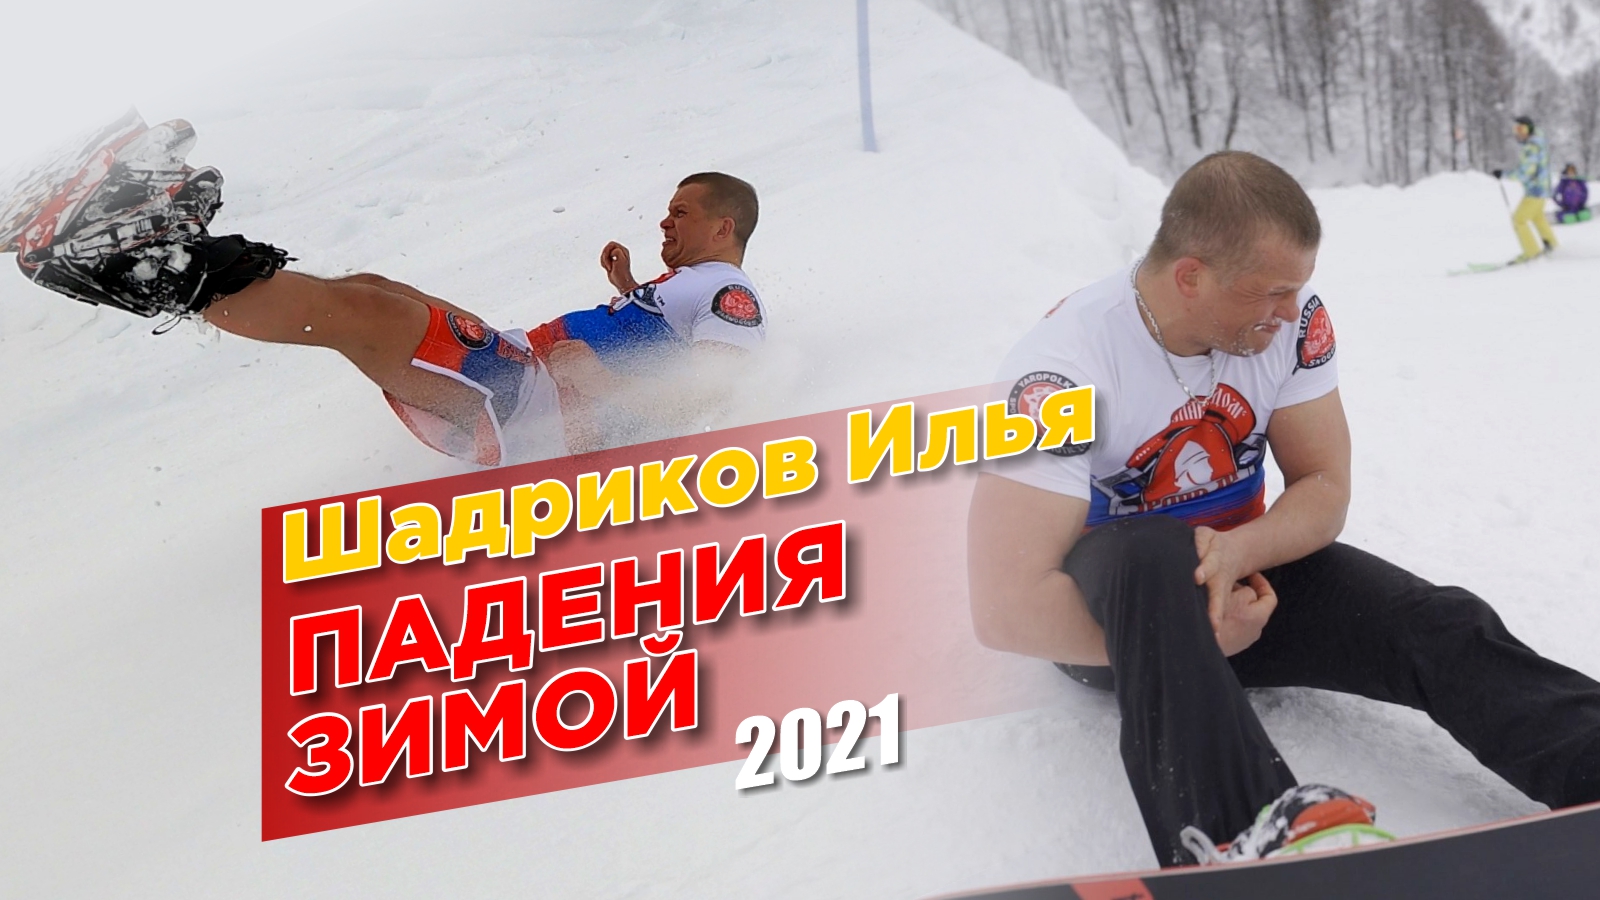 Падения зимой 2021, Сноуборд и беговые лыжи, Шадриков Илья, Экстрим со смехом.